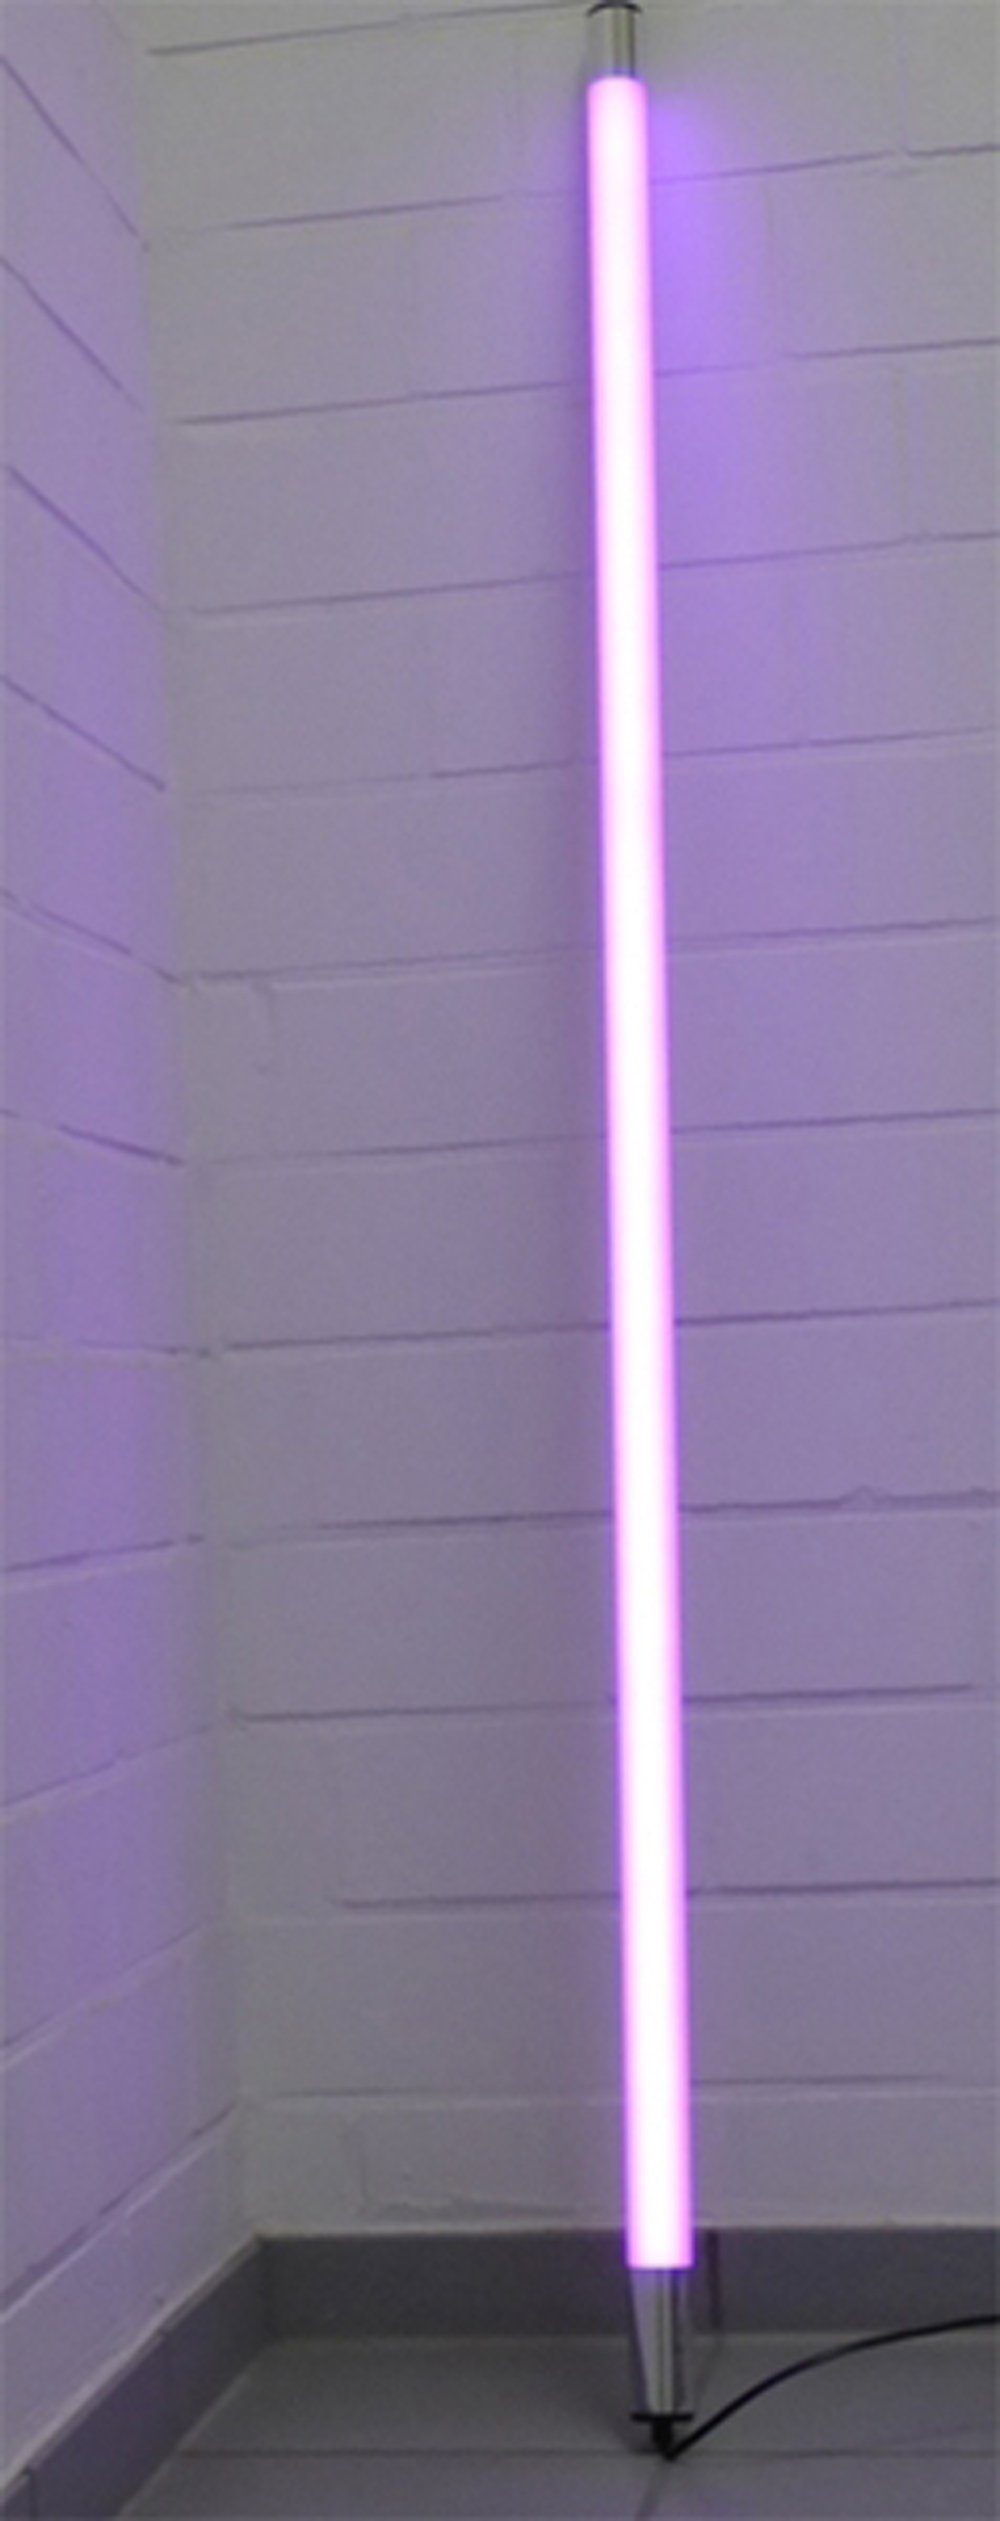 XENON LED Wandleuchte 6862 LED Leuchtstab Satiniert 0,63m Lang 1000Lumen IP20 Innen Violett, LED Röhre T8, Xenon